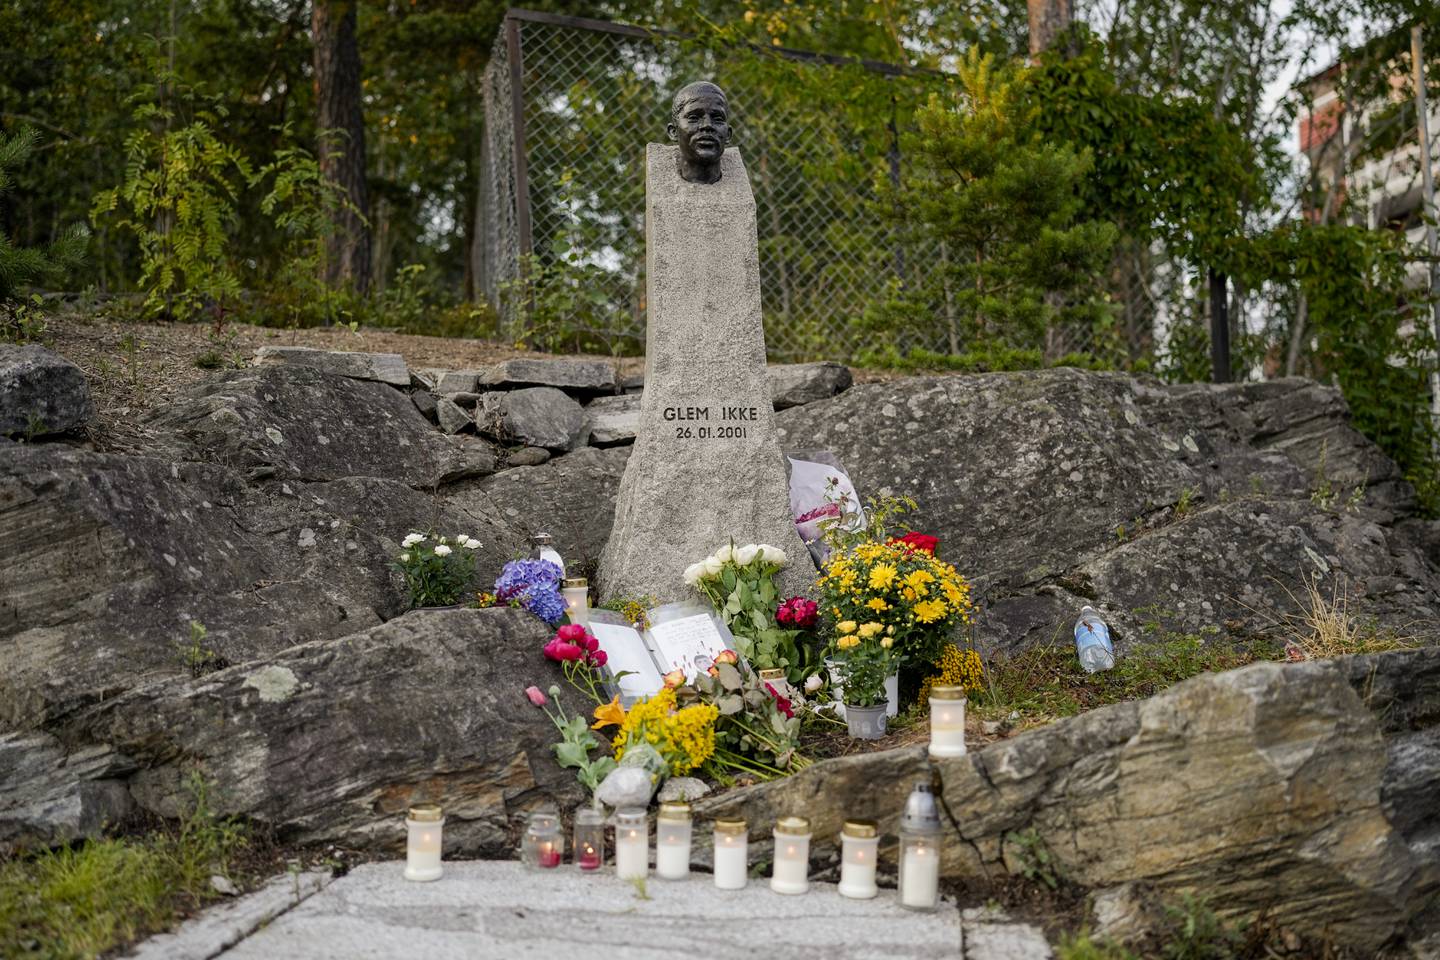 Oslo 20210720. 
Befolkningen på Holmlia tenner lys og legge ned blomster ved minnesmerket etter Benjamin Hermansen. Tidligere i dag ble statuen utsatt for hærverk.